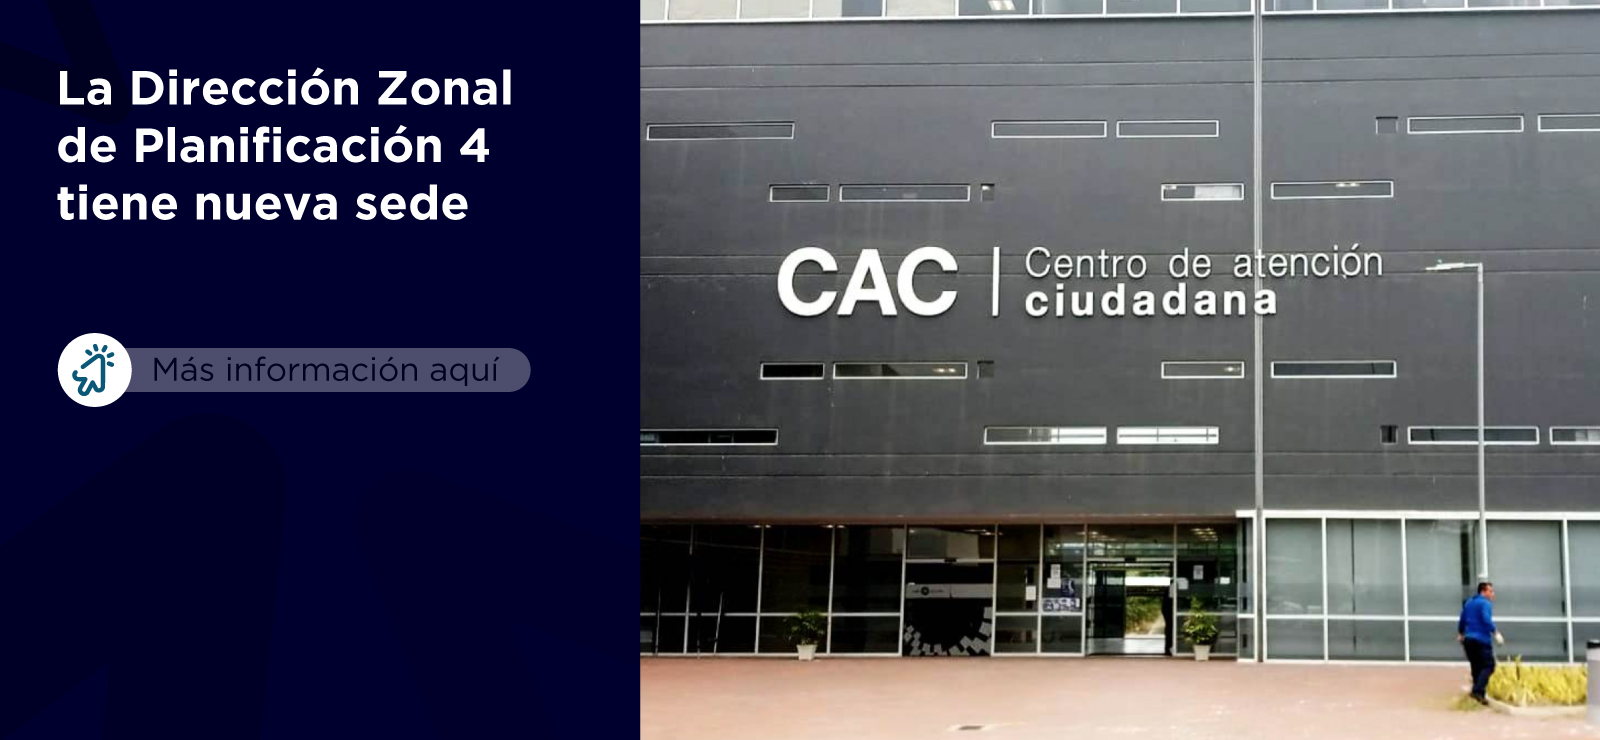 Las nuevas oficinas de la Dirección Zonal de Planificación 4 se ubican en el Centro de Atención Ciudadana (CAC) de Portoviejo